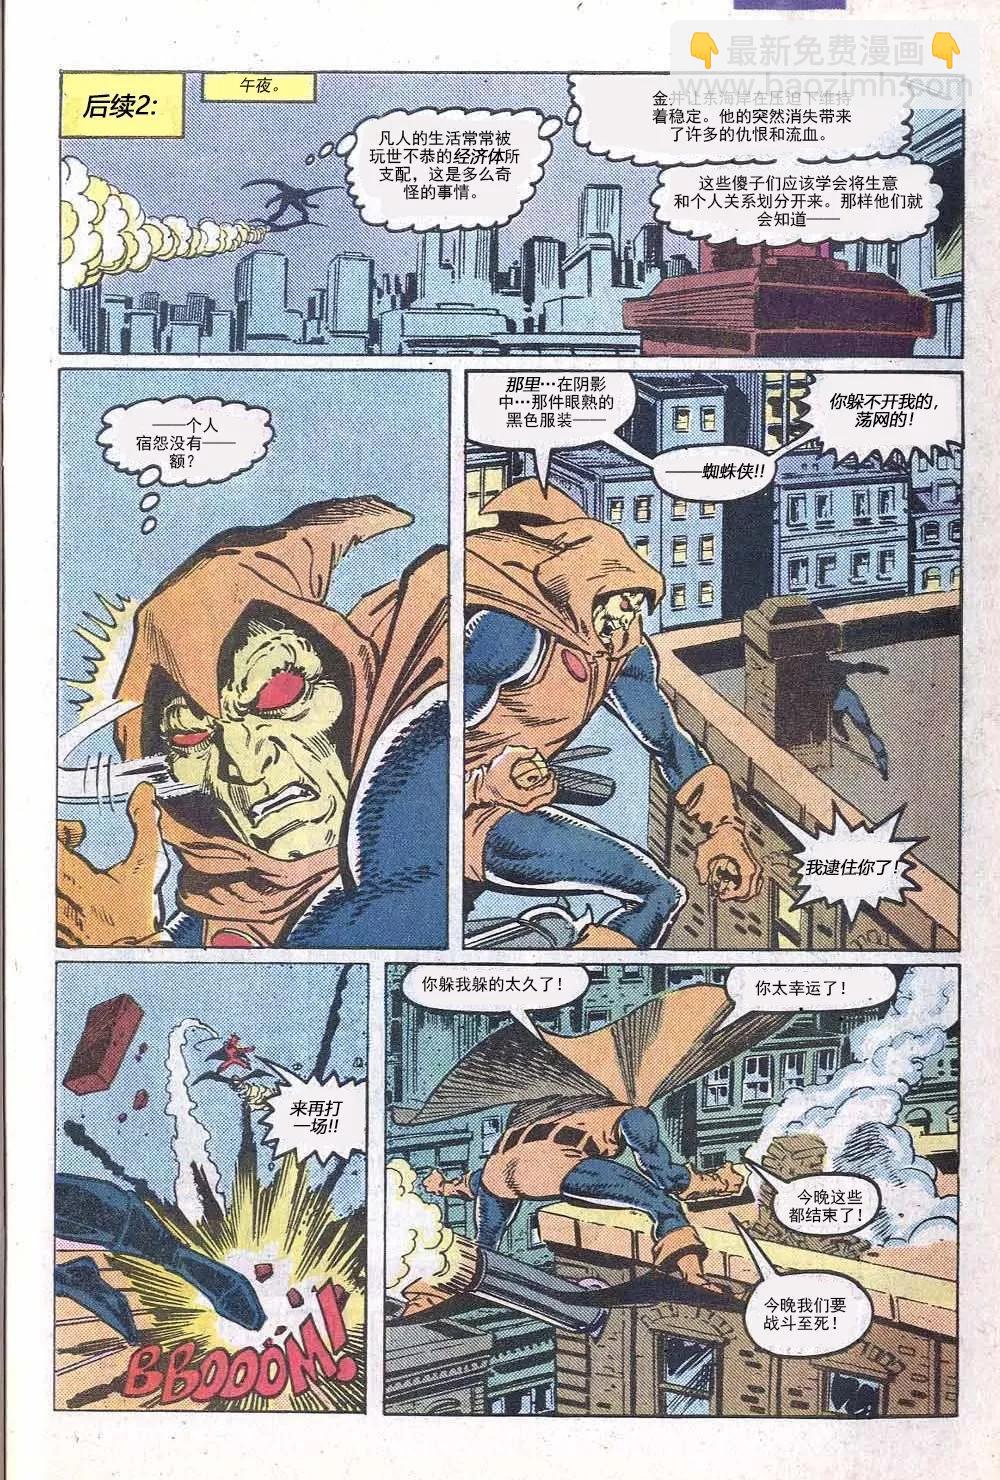 神奇蜘蛛俠 - 第284卷幫派戰爭#1 - 2